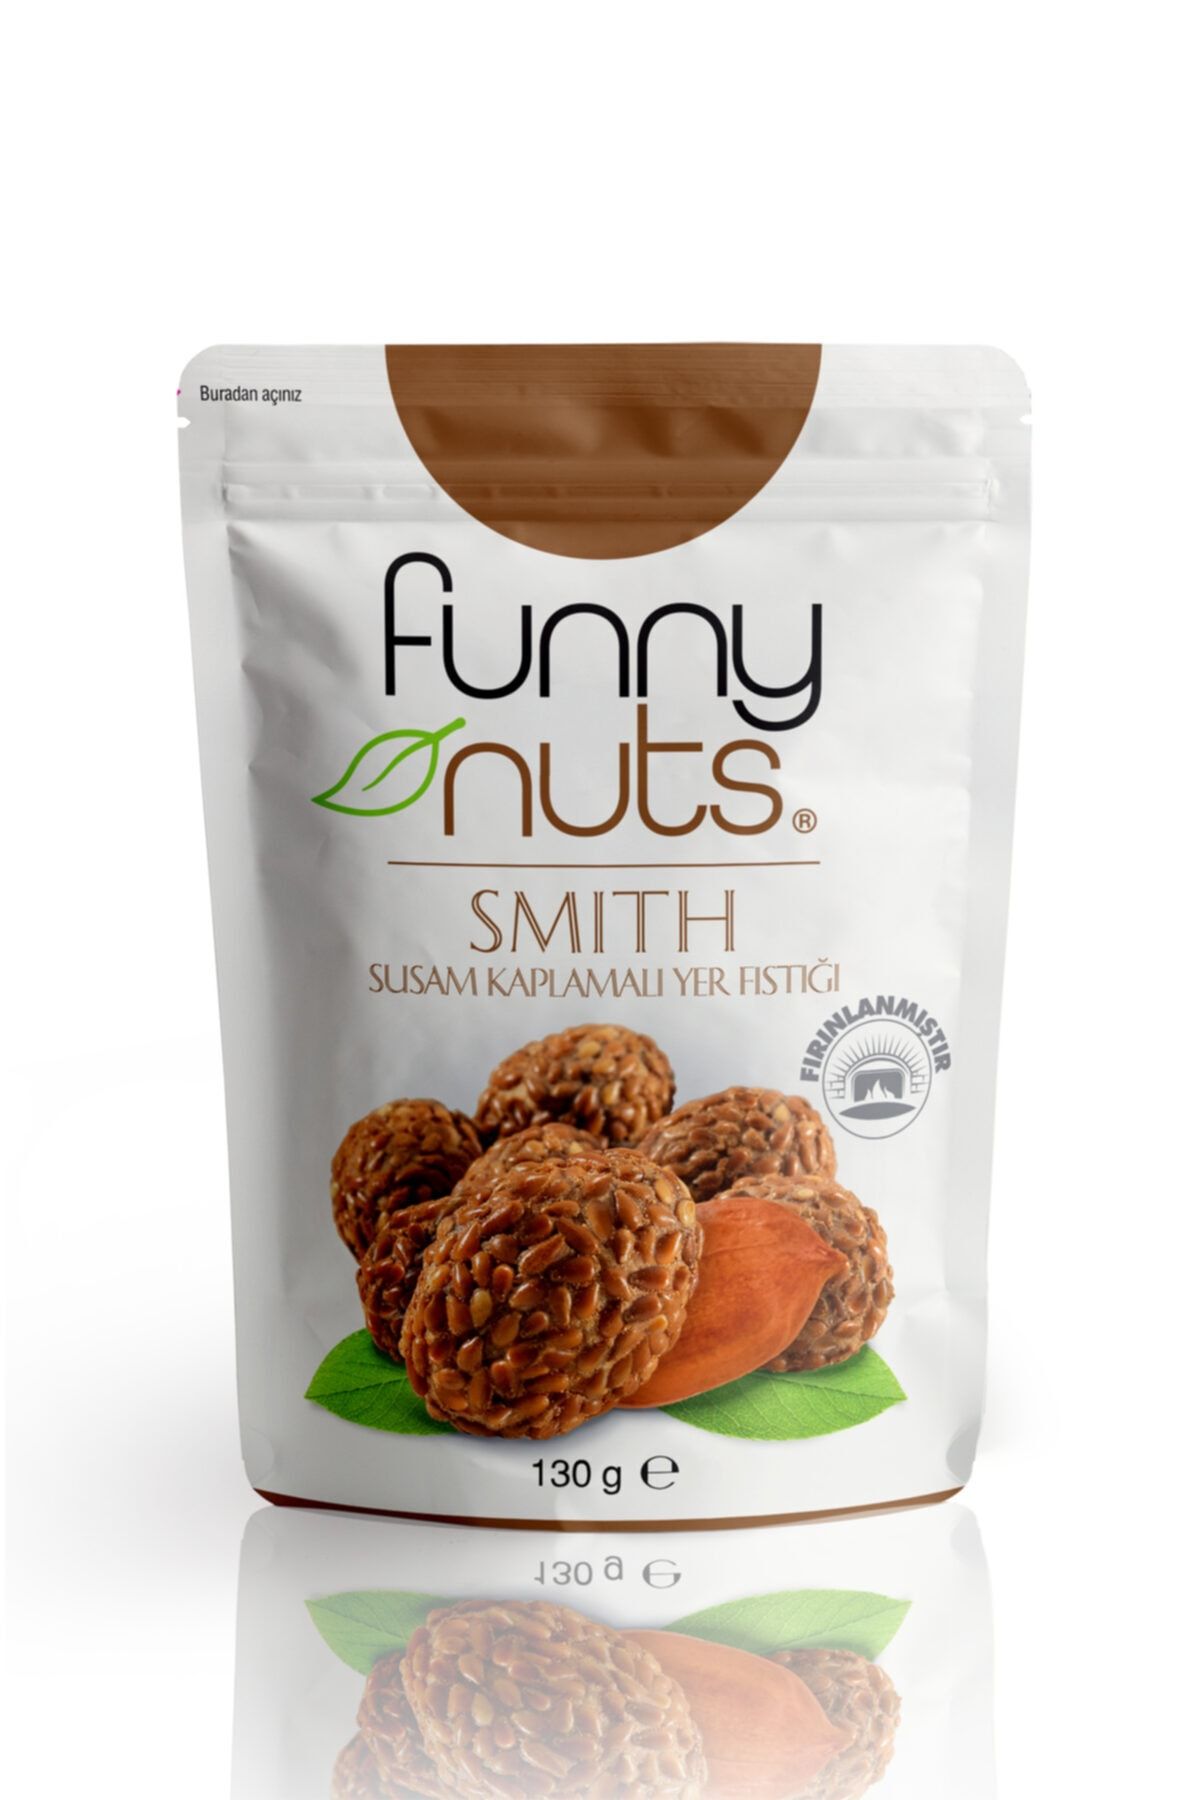 Funny Nuts Smith Susam Kaplamalı Yer Fıstığı 130 gr Lık Paketlerden 1 Koli 12 Paket( 1560 Gr. )